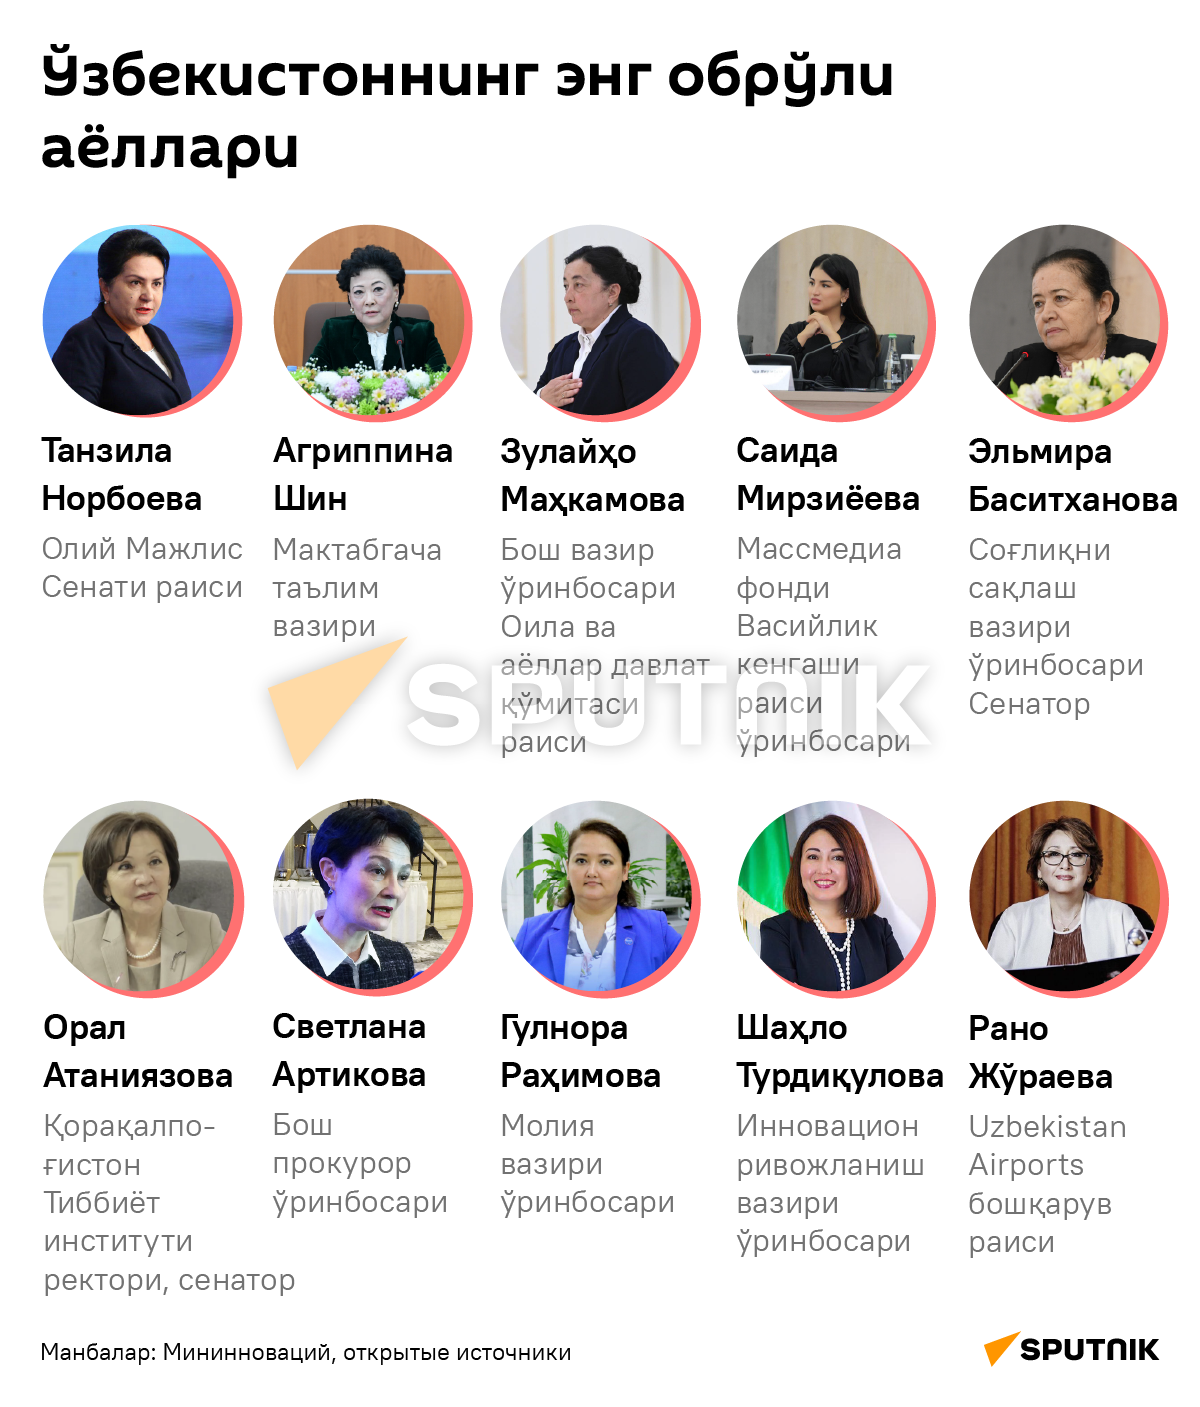 Самые влиятельные женщины Узбекистана деск узб - Sputnik Ўзбекистон